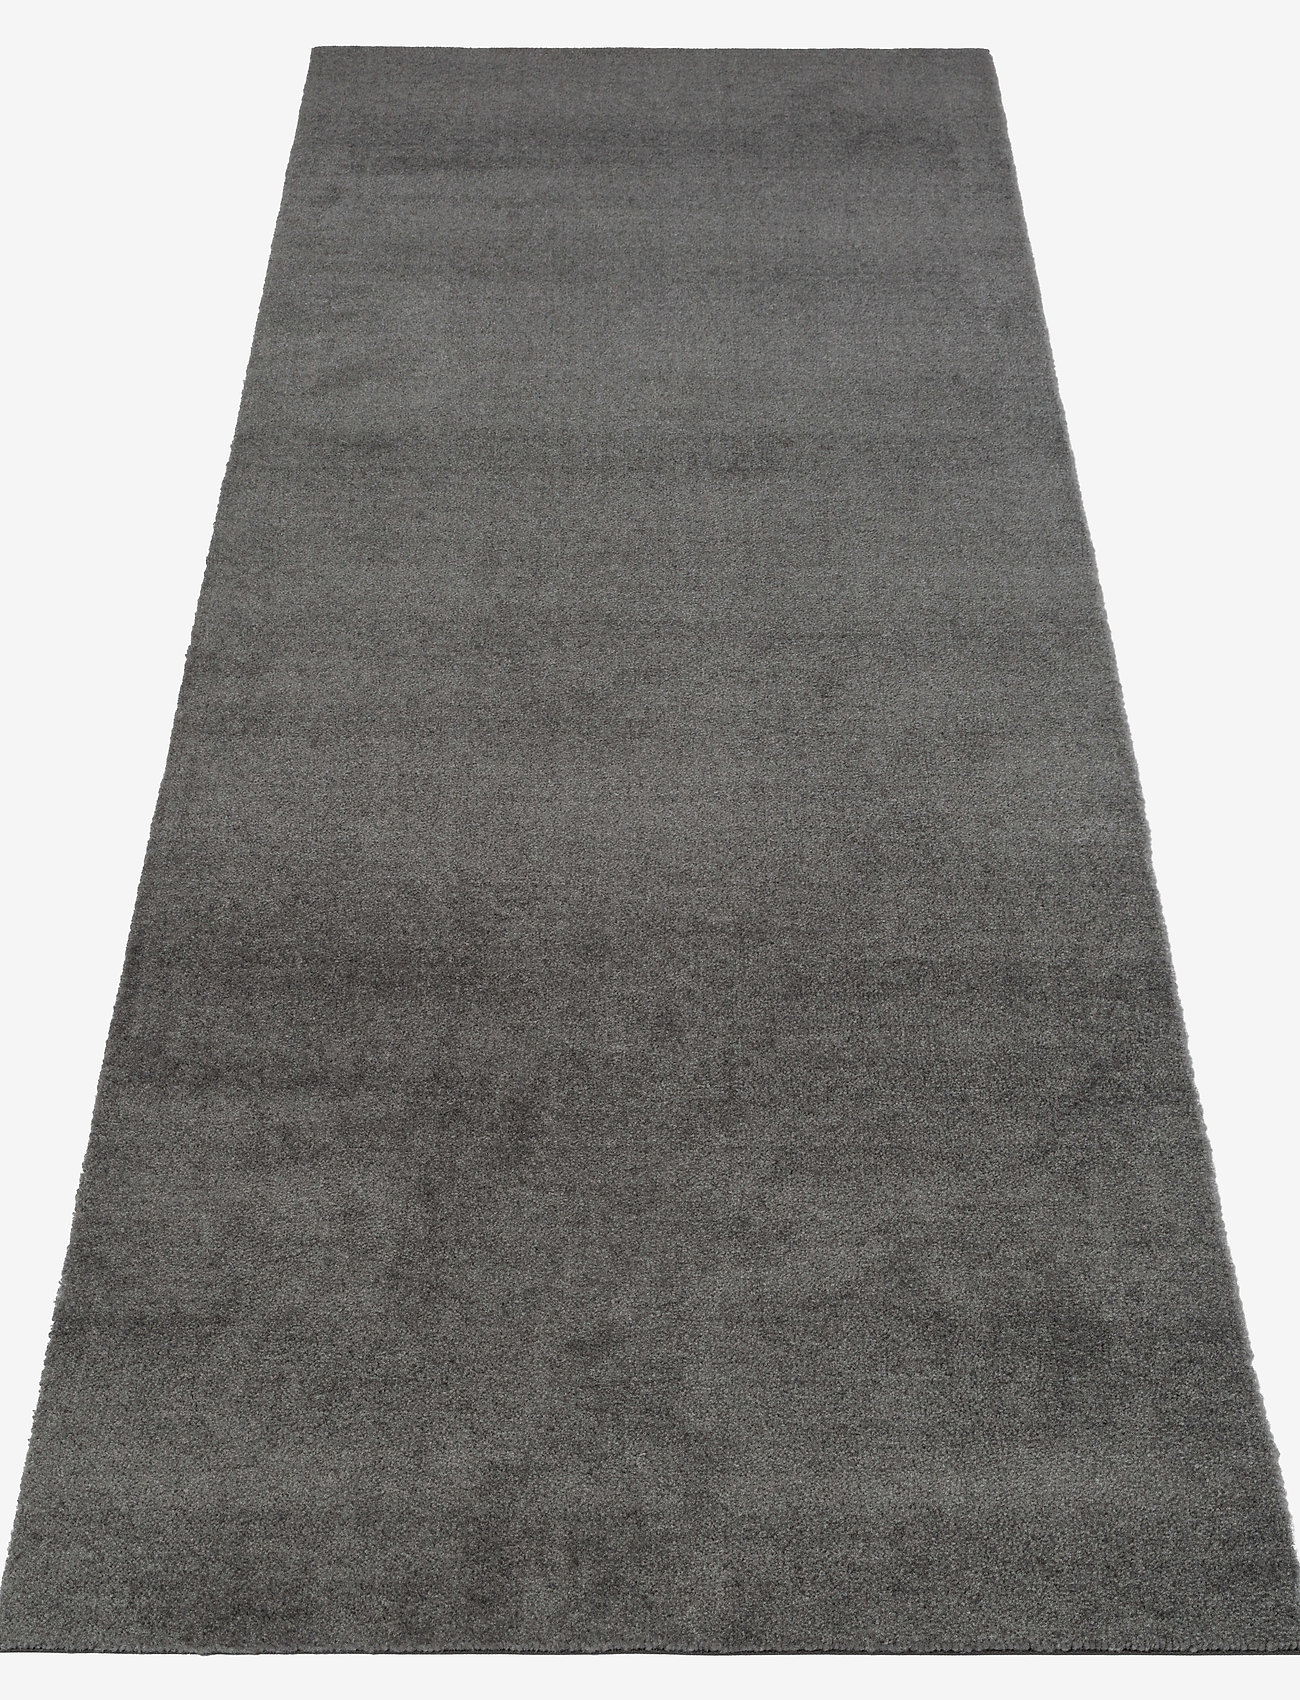 tica copenhagen - Floormat polyamide, 200x90 cm, unicolor - prieškambario kilimėliai - steelgrey - 1